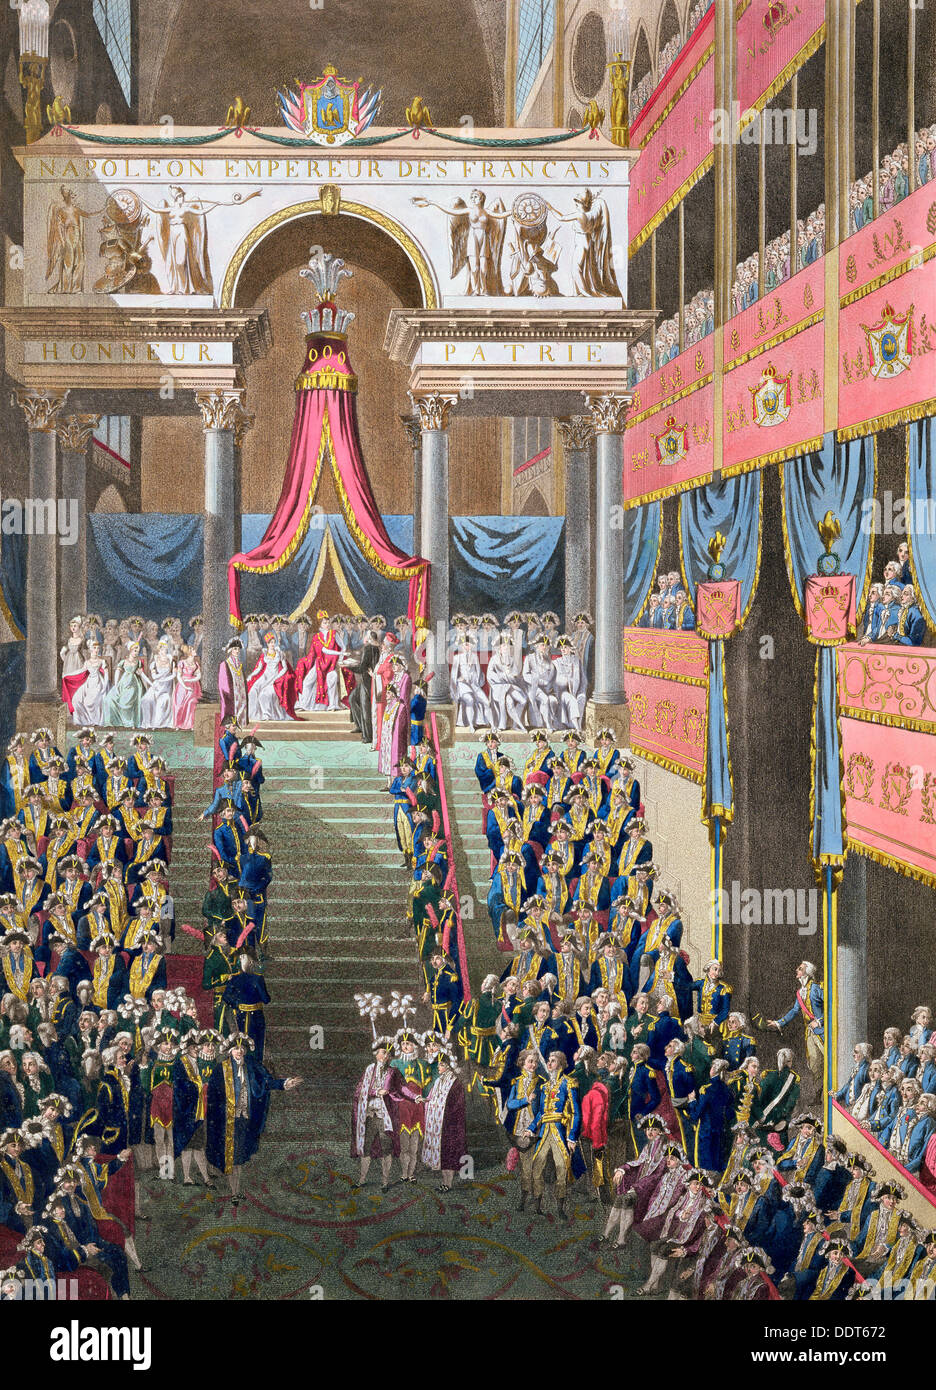 'Sacred Festival e incoronazione di loro maestà imperiale", Parigi, 1804 (1806). Artista: sconosciuto Foto Stock